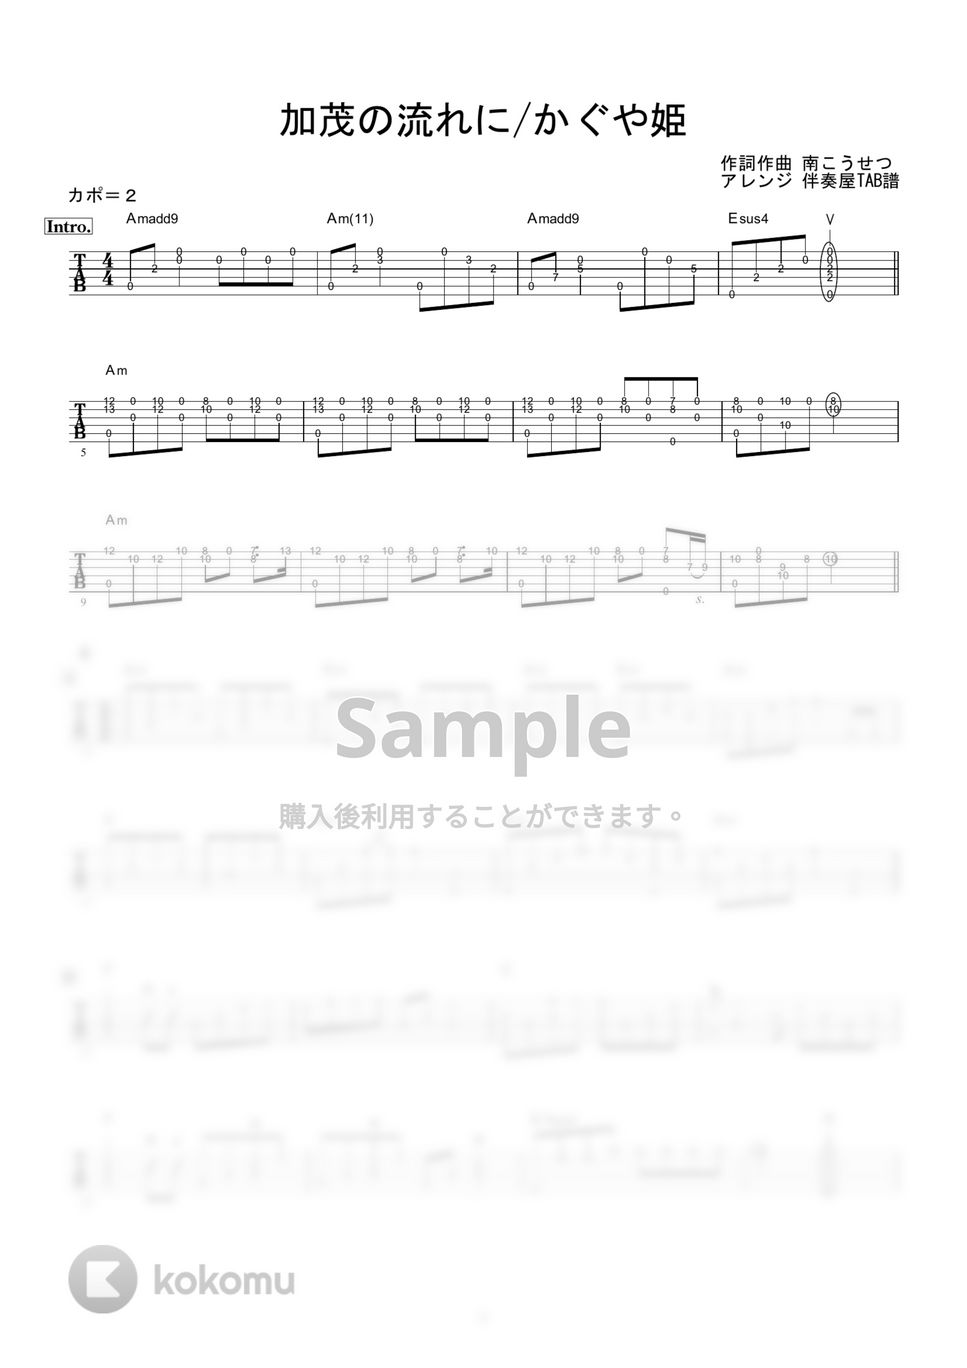 かぐや姫 - 加茂の流れに (ギター伴奏/イントロ・間奏ソロギター) by 伴奏屋TAB譜